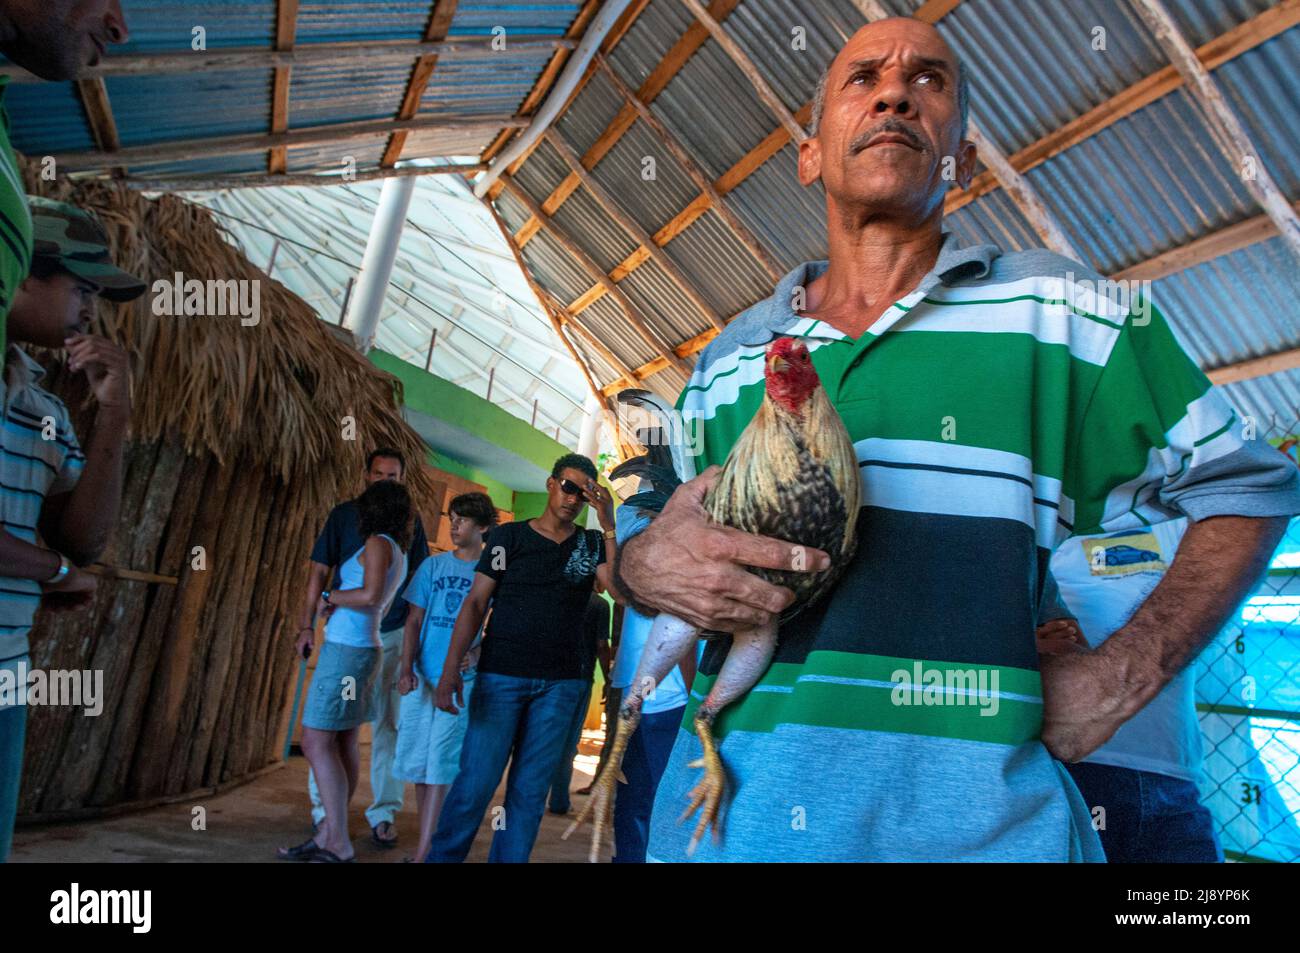 La lucha de gallos juega un papel importante en la península de Samana, en República Dominicana, cerca de la ciudad de Las Terrenas, hay peleas de gallos domingos que son generalmente él Foto de stock